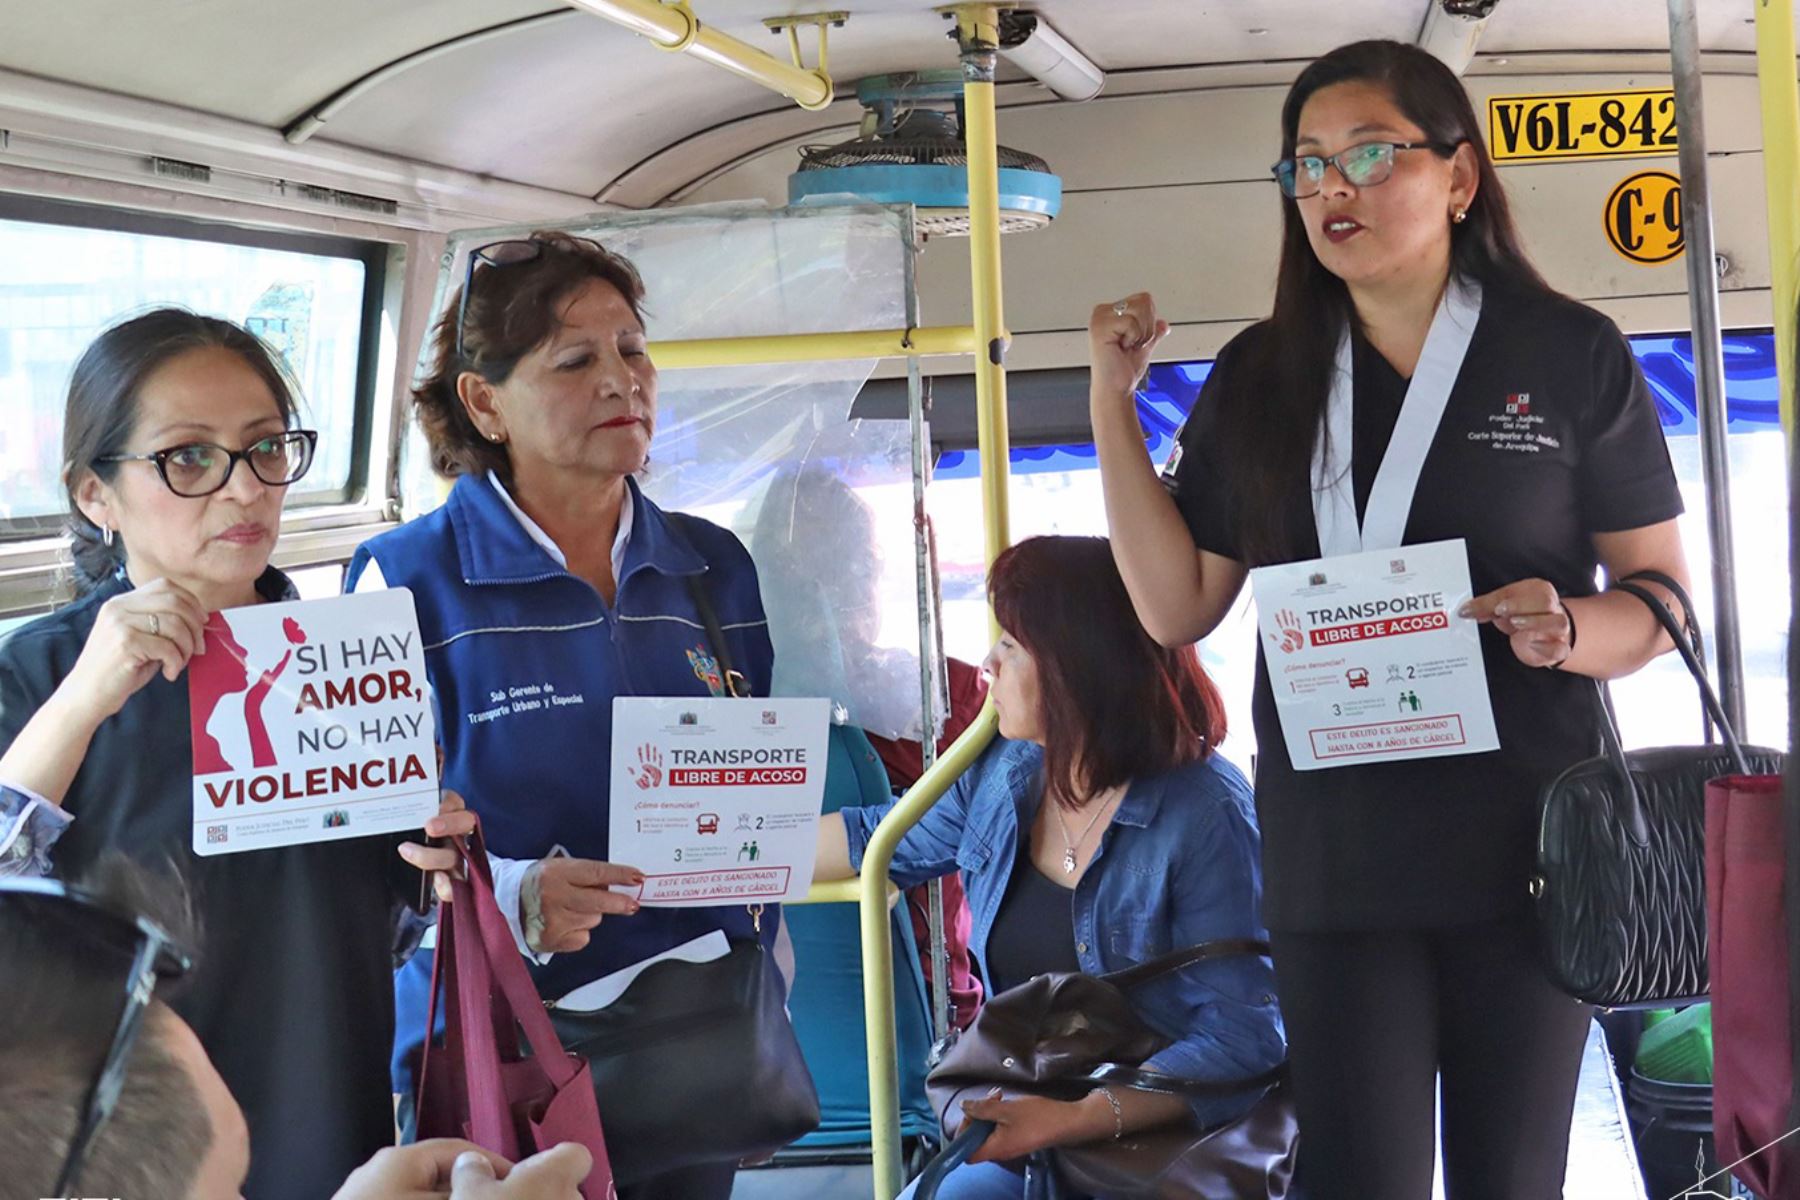 Jueces, servidores de la entidad de justicia e inspectores de la municipalidad provincial de Arequipa participaron en la campaña. Foto: ANDINA/Cortesía Rocío Méndez